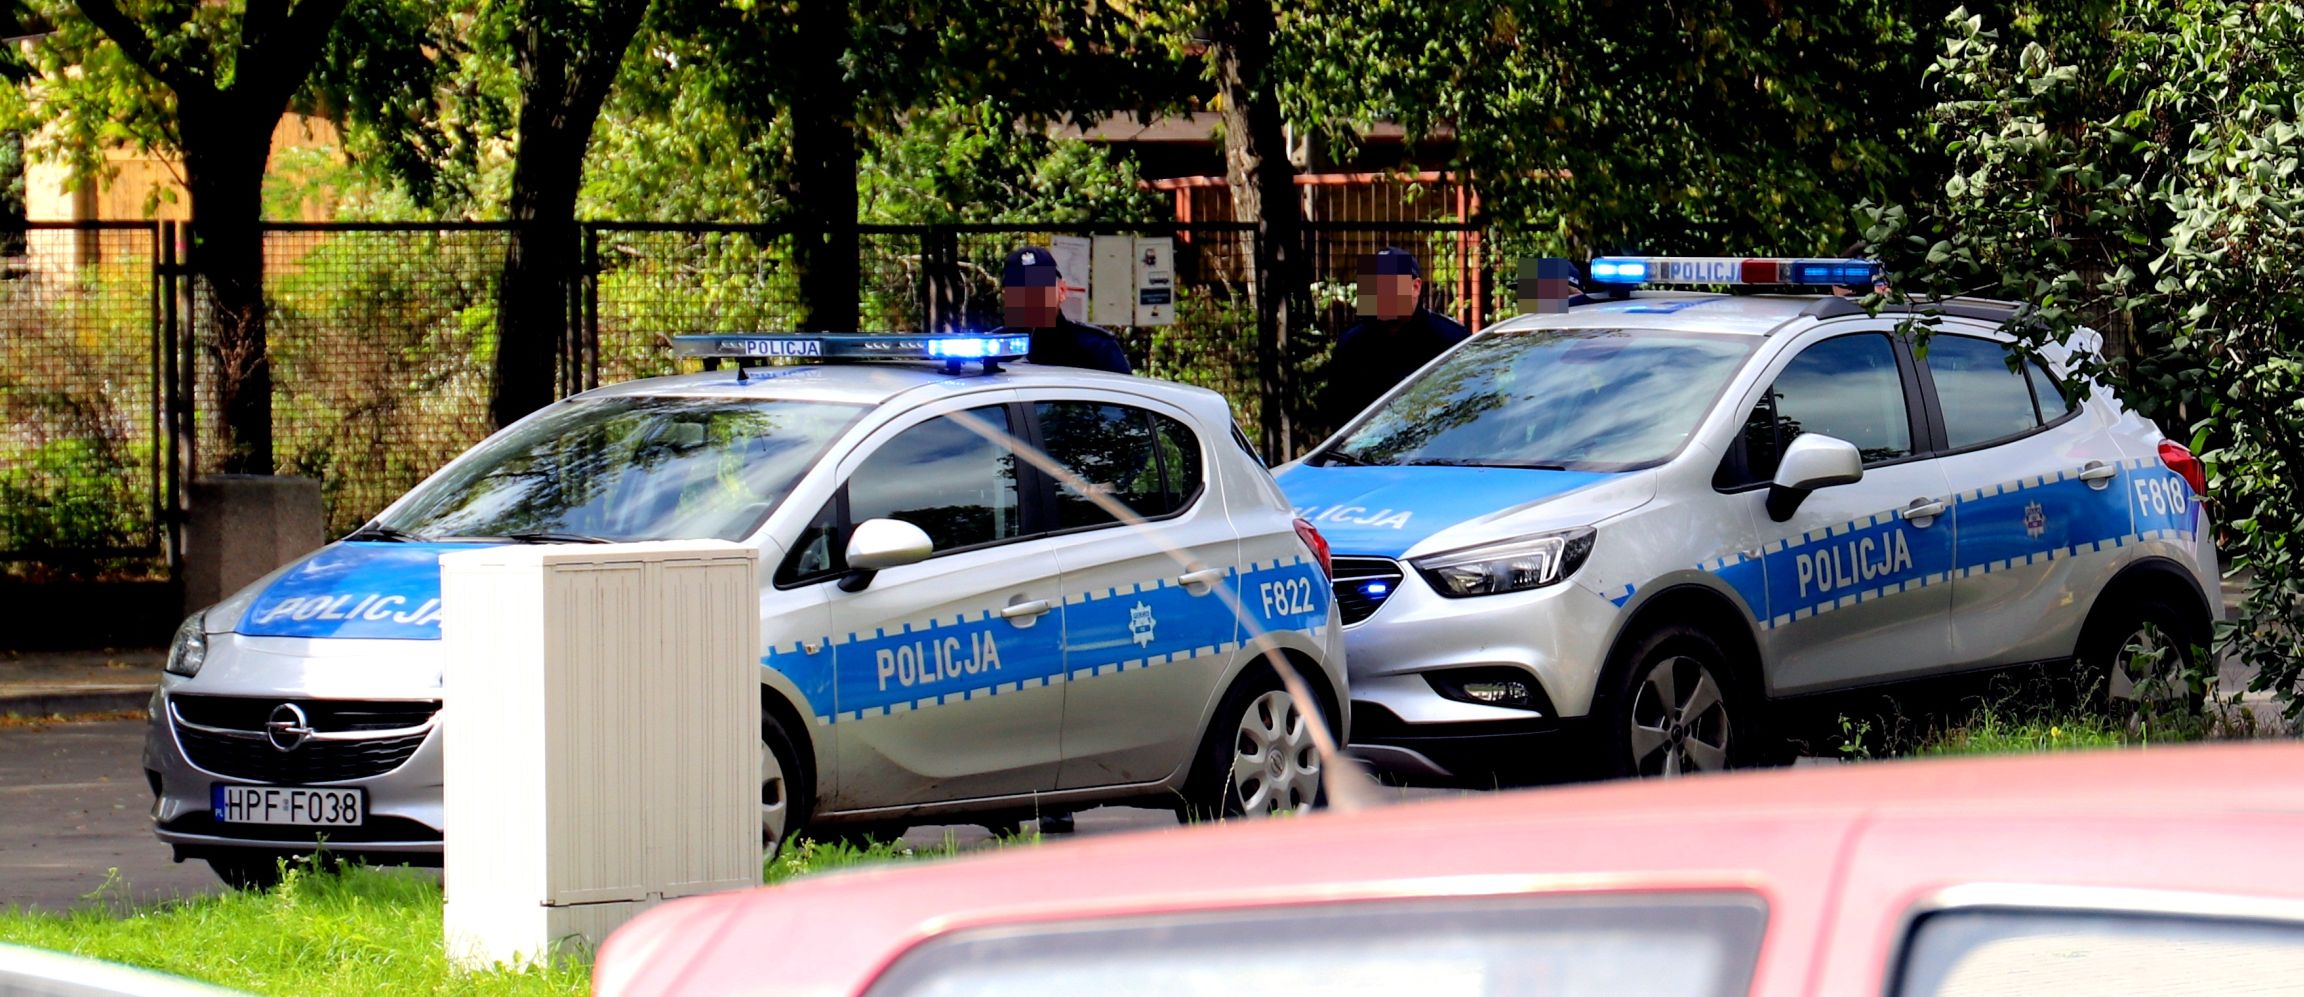 Apele kutnowskiej policji: "Uwaga na złodziei, pamiętajmy o reżimie sanitarnym" - Zdjęcie główne